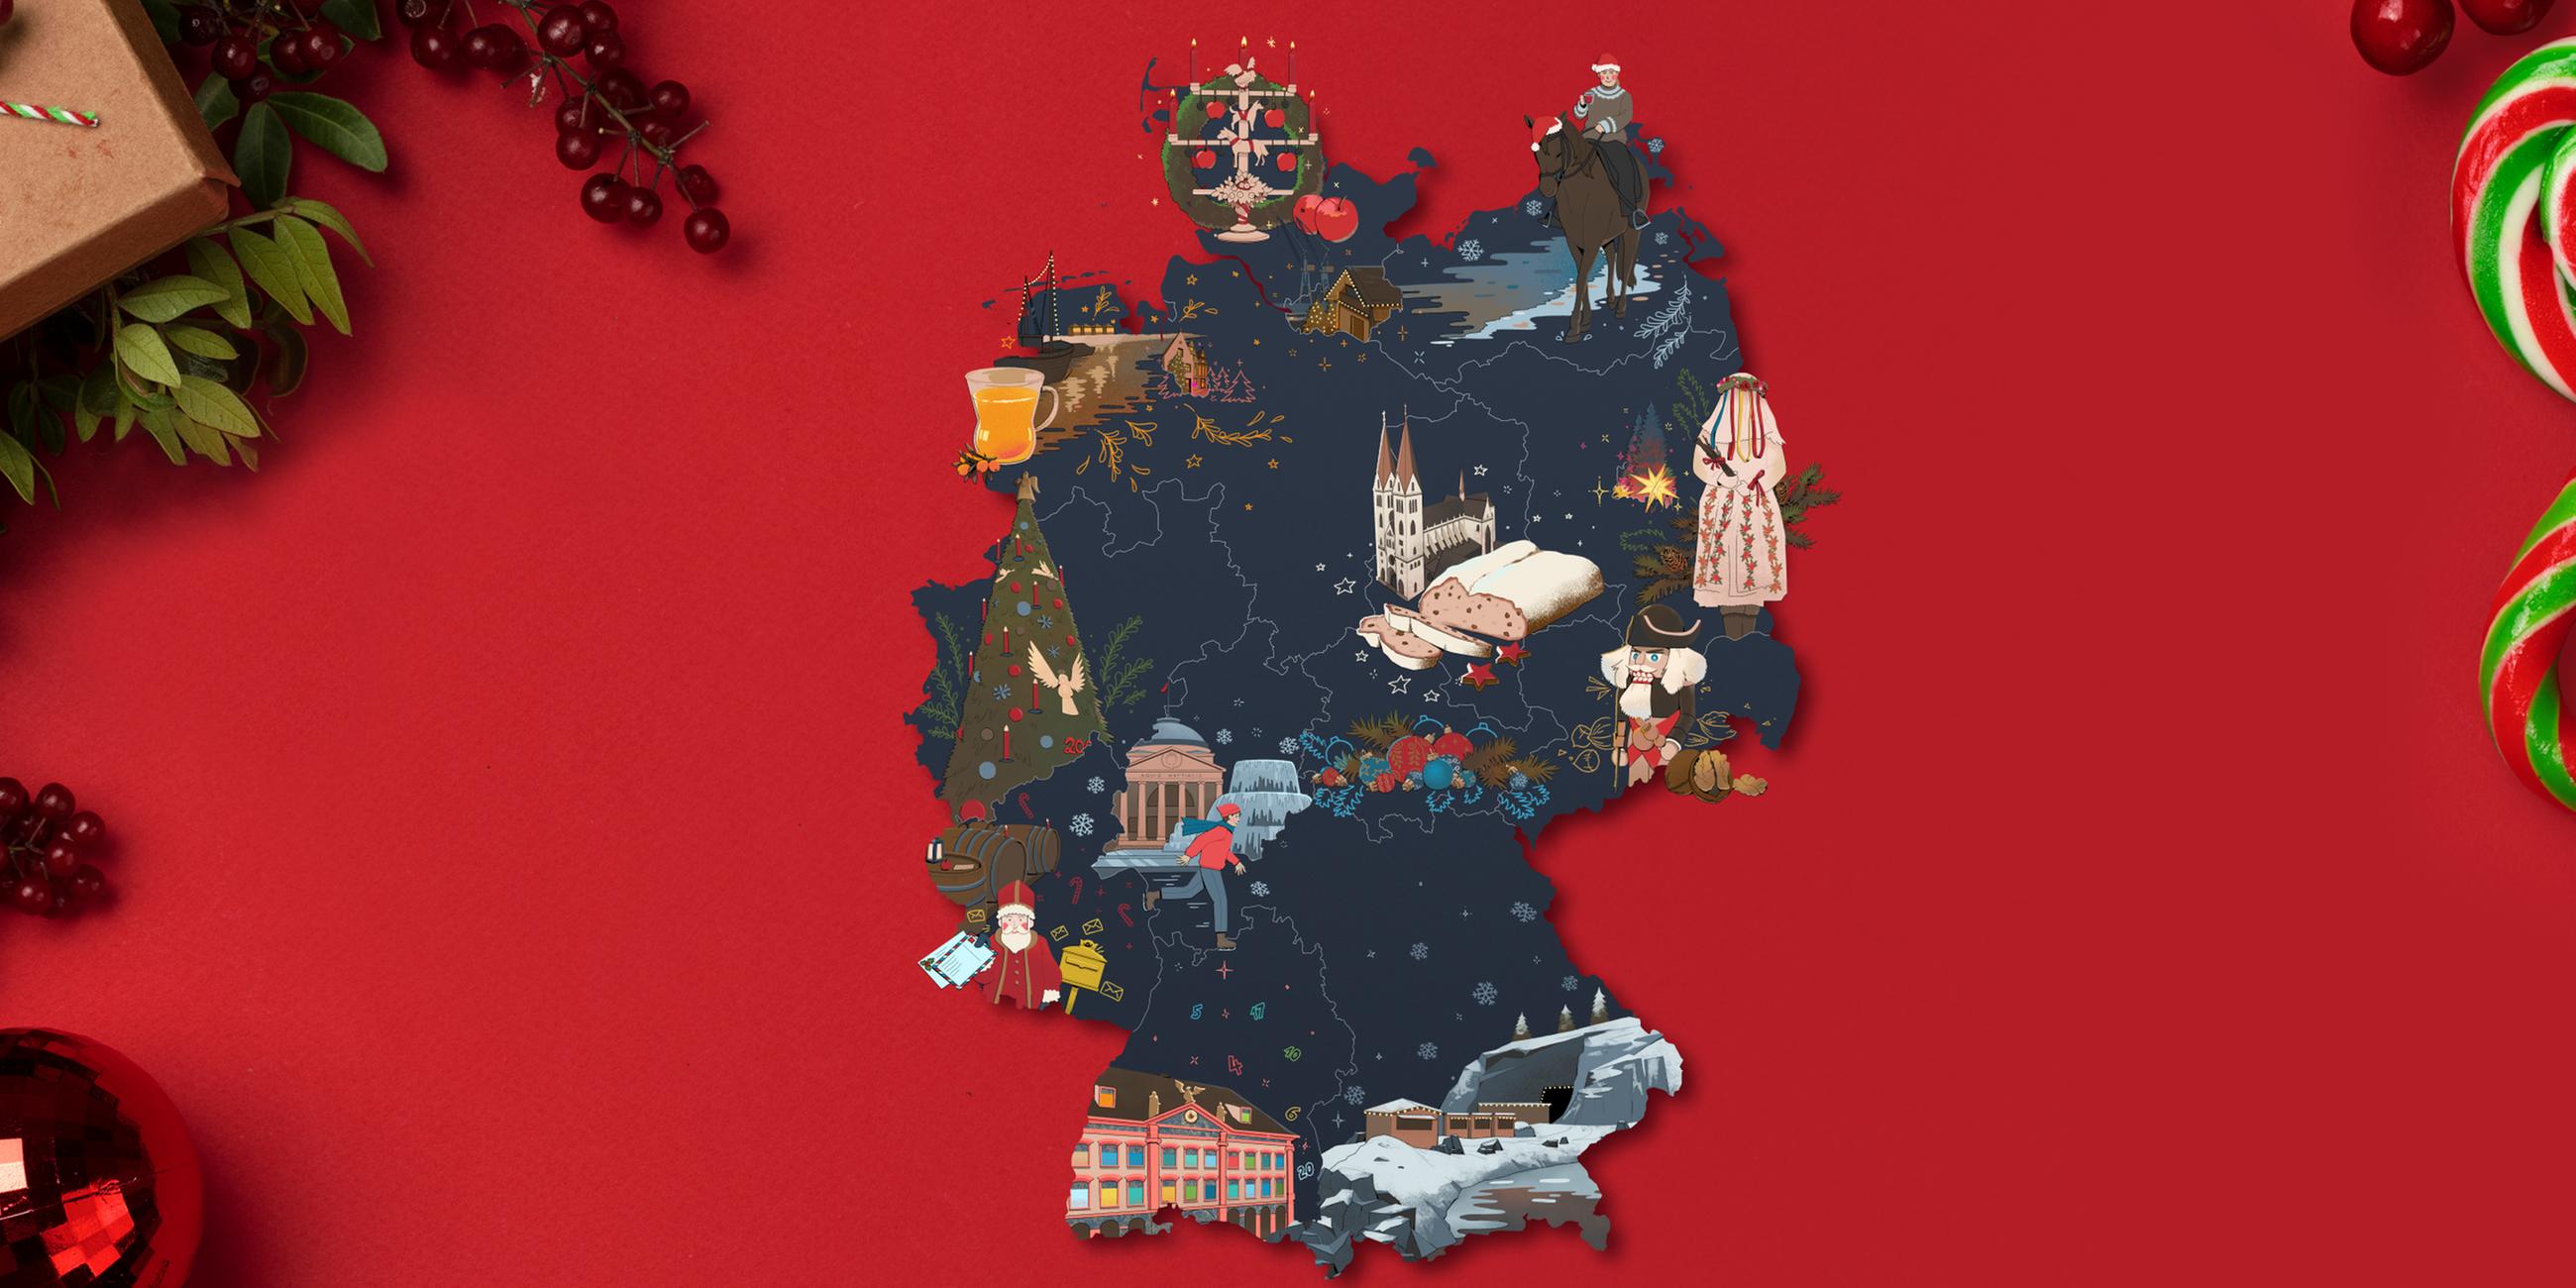 Auf einer Deutschlandkarte sind weihnachtliche Symbole zu sehen und je Bundesland ein Ort, der besonders weihnachtlich ist - zum Beispiel der größte Weihnachtsbaum der Welt in Nordrhein-Westfalen, der Jöölboom in Schleswig-Holstein, Halberstädter Domstollen in Sachsen-Anhalt, der Nussknacker in Sachsen oder auch das Adventskalenderhaus in Baden-Württemberg.